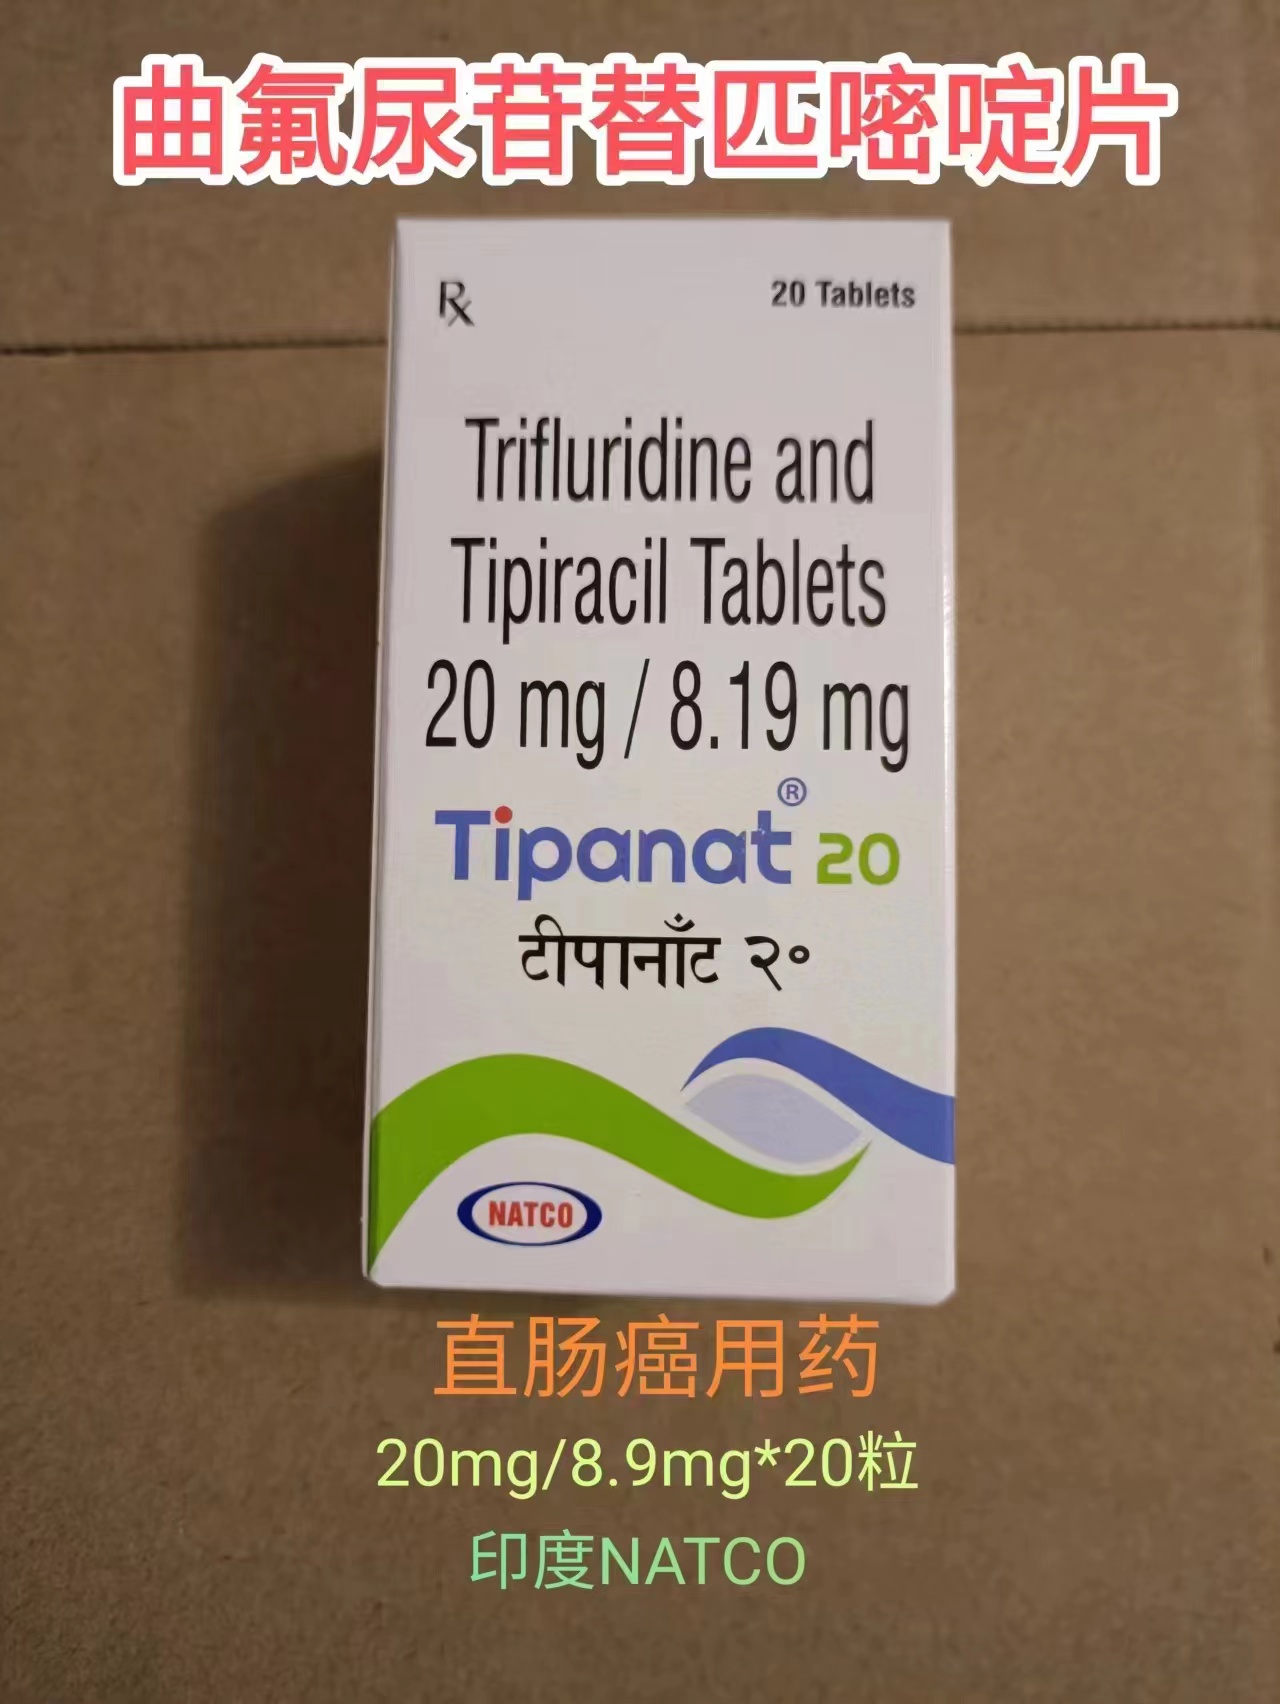 曲氟尿苷替匹嘧啶(Trifluridine Tipiracil)朗斯弗用法用量